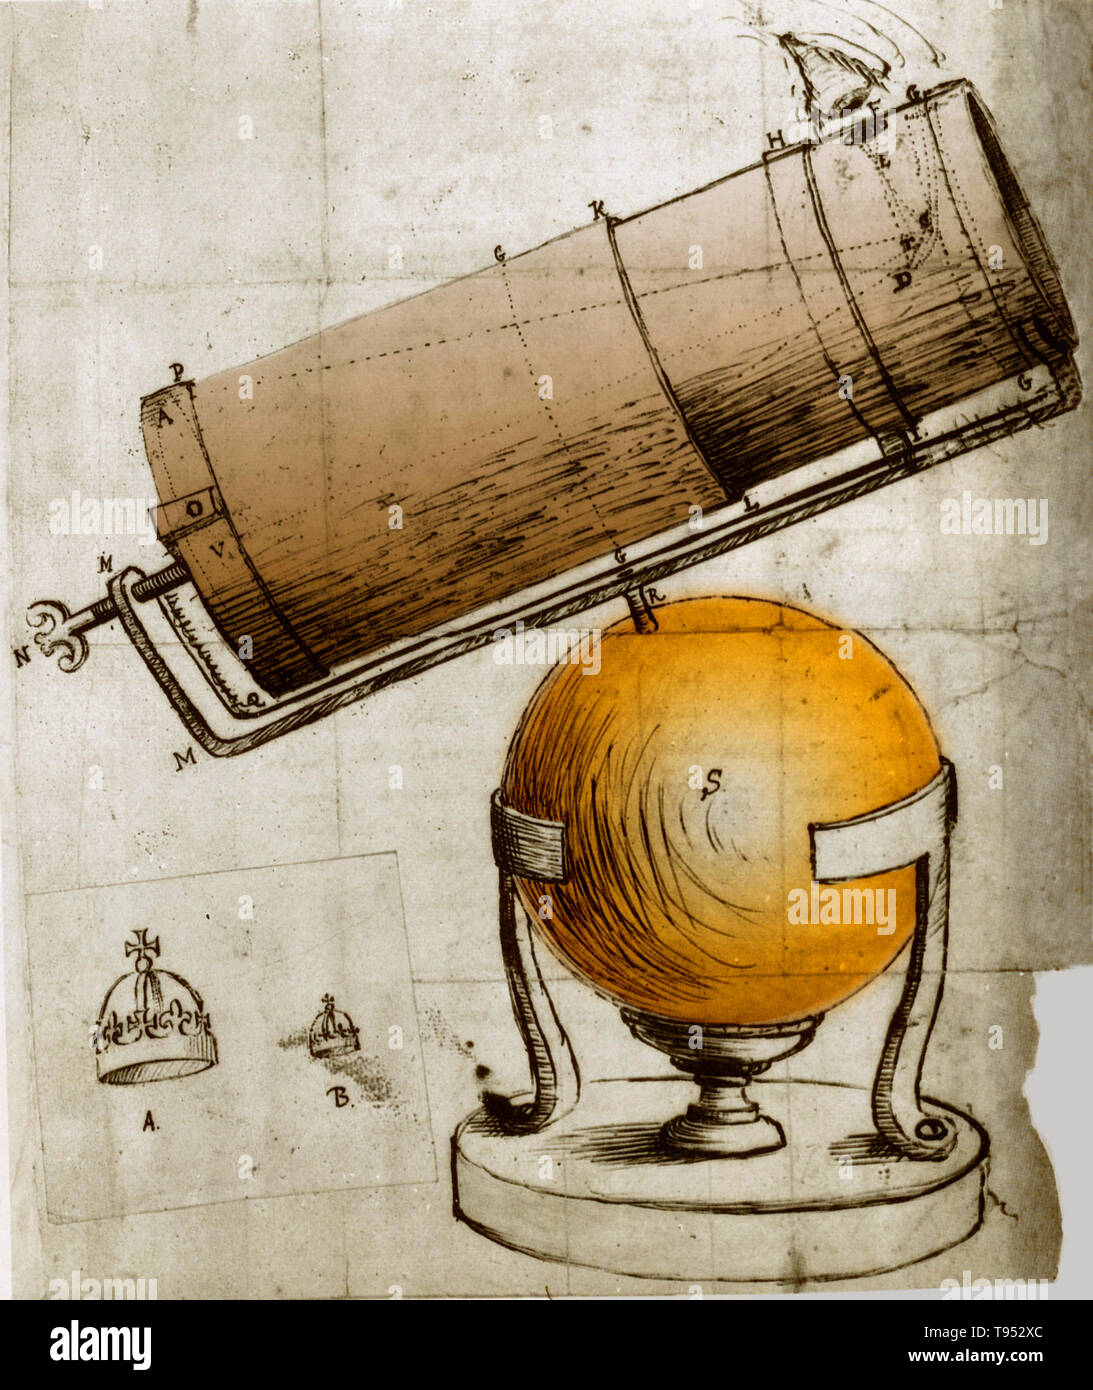 Télescope à réflexion. Inventé et dessiné par Isaac Newton (1642-1726/1727). Banque D'Images